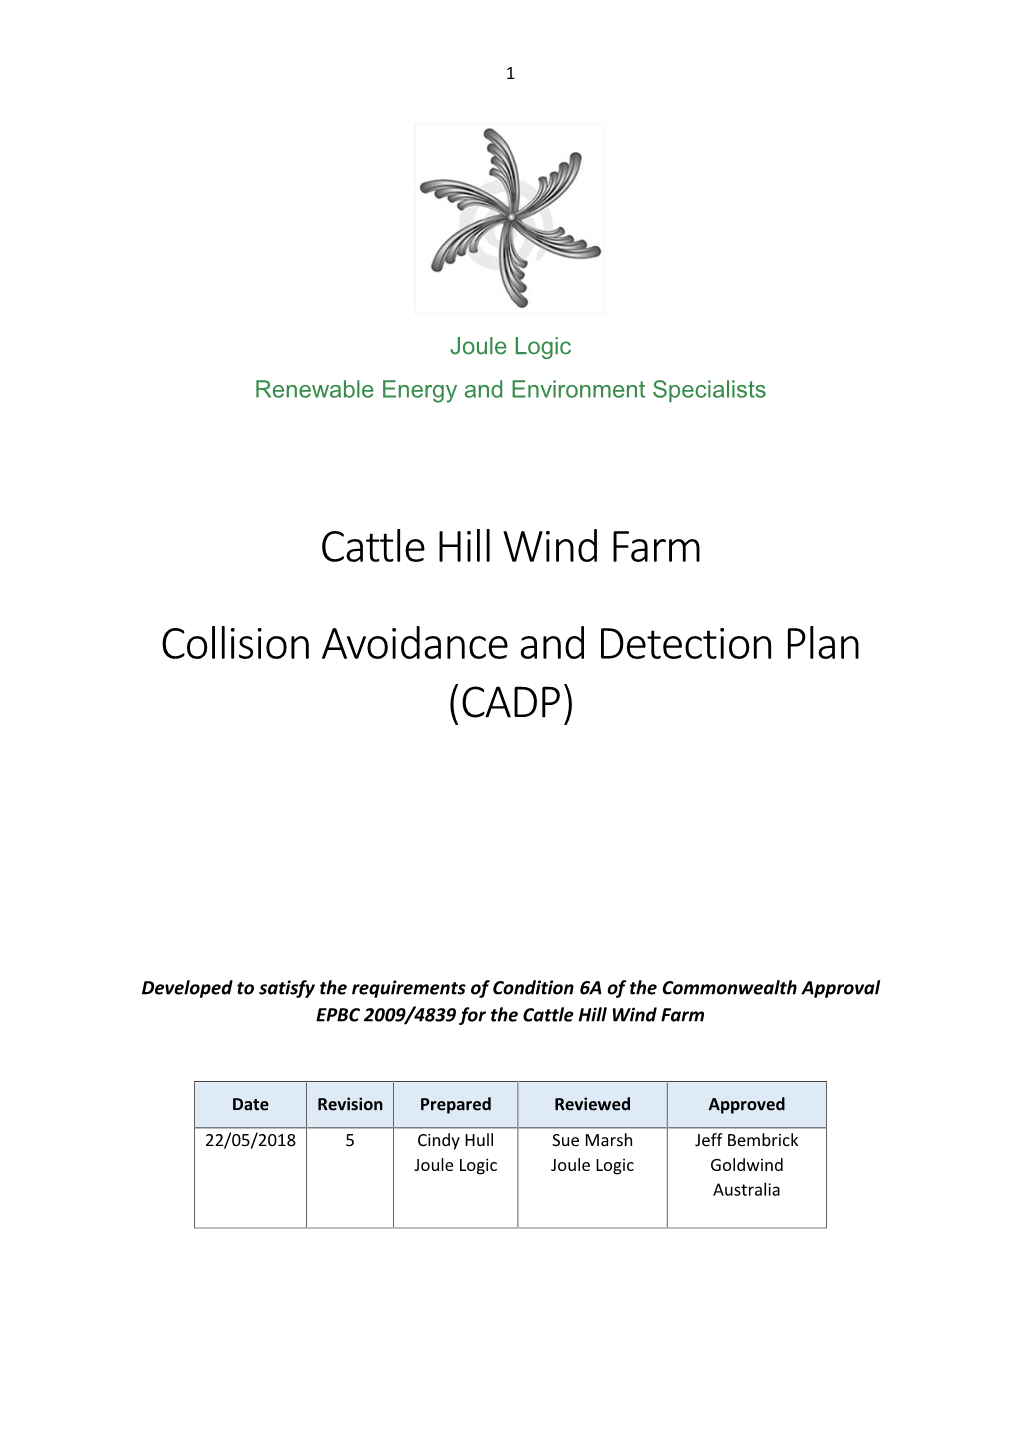 Cattle Hill Wind Farm Collision Avoidanceanddetectionplan (CADP)